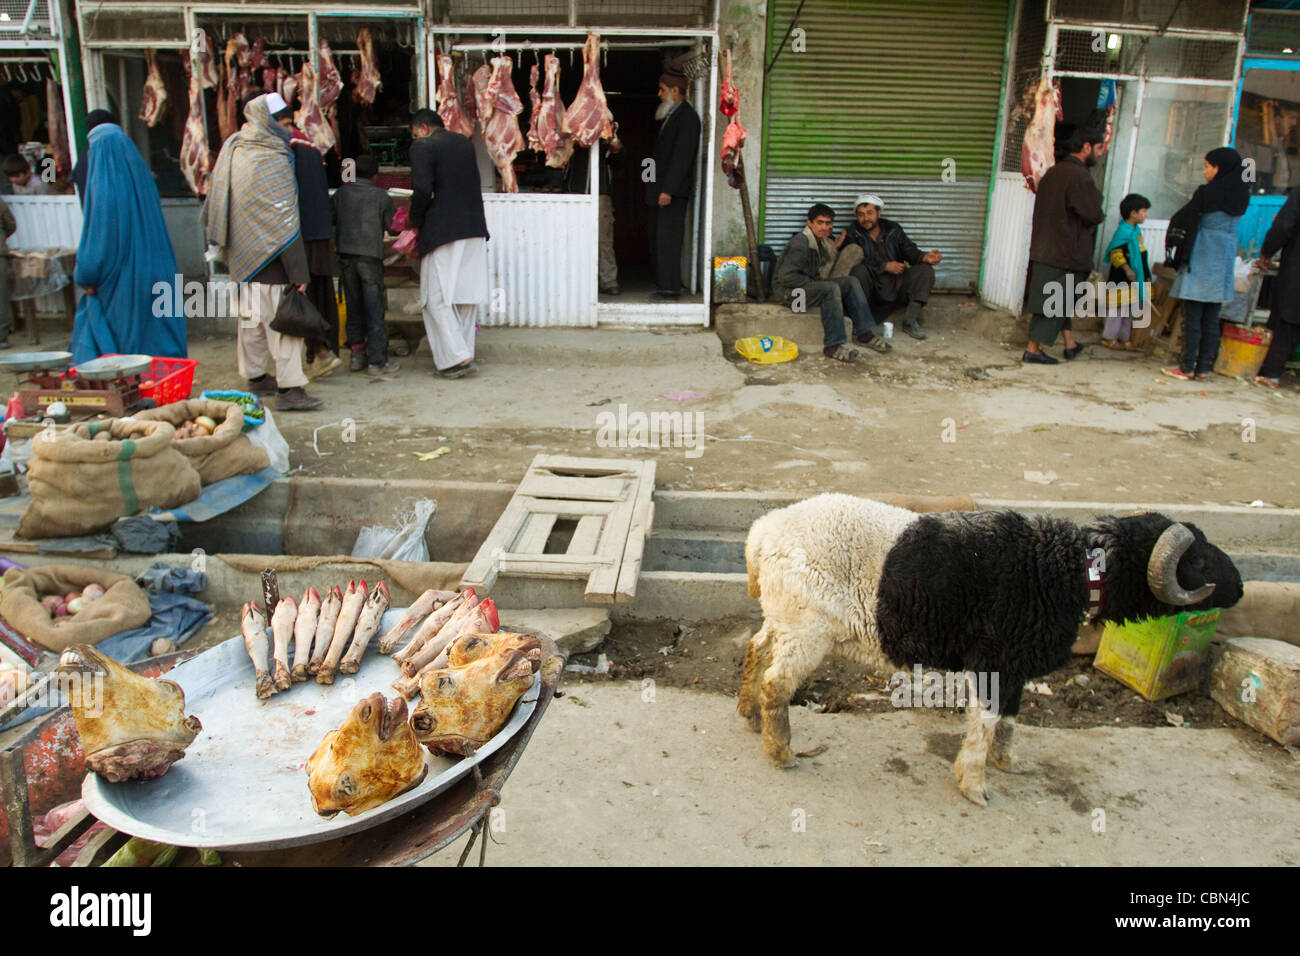 Scène de rue à partir de l'Afghanistan Kaboul marché viande Banque D'Images